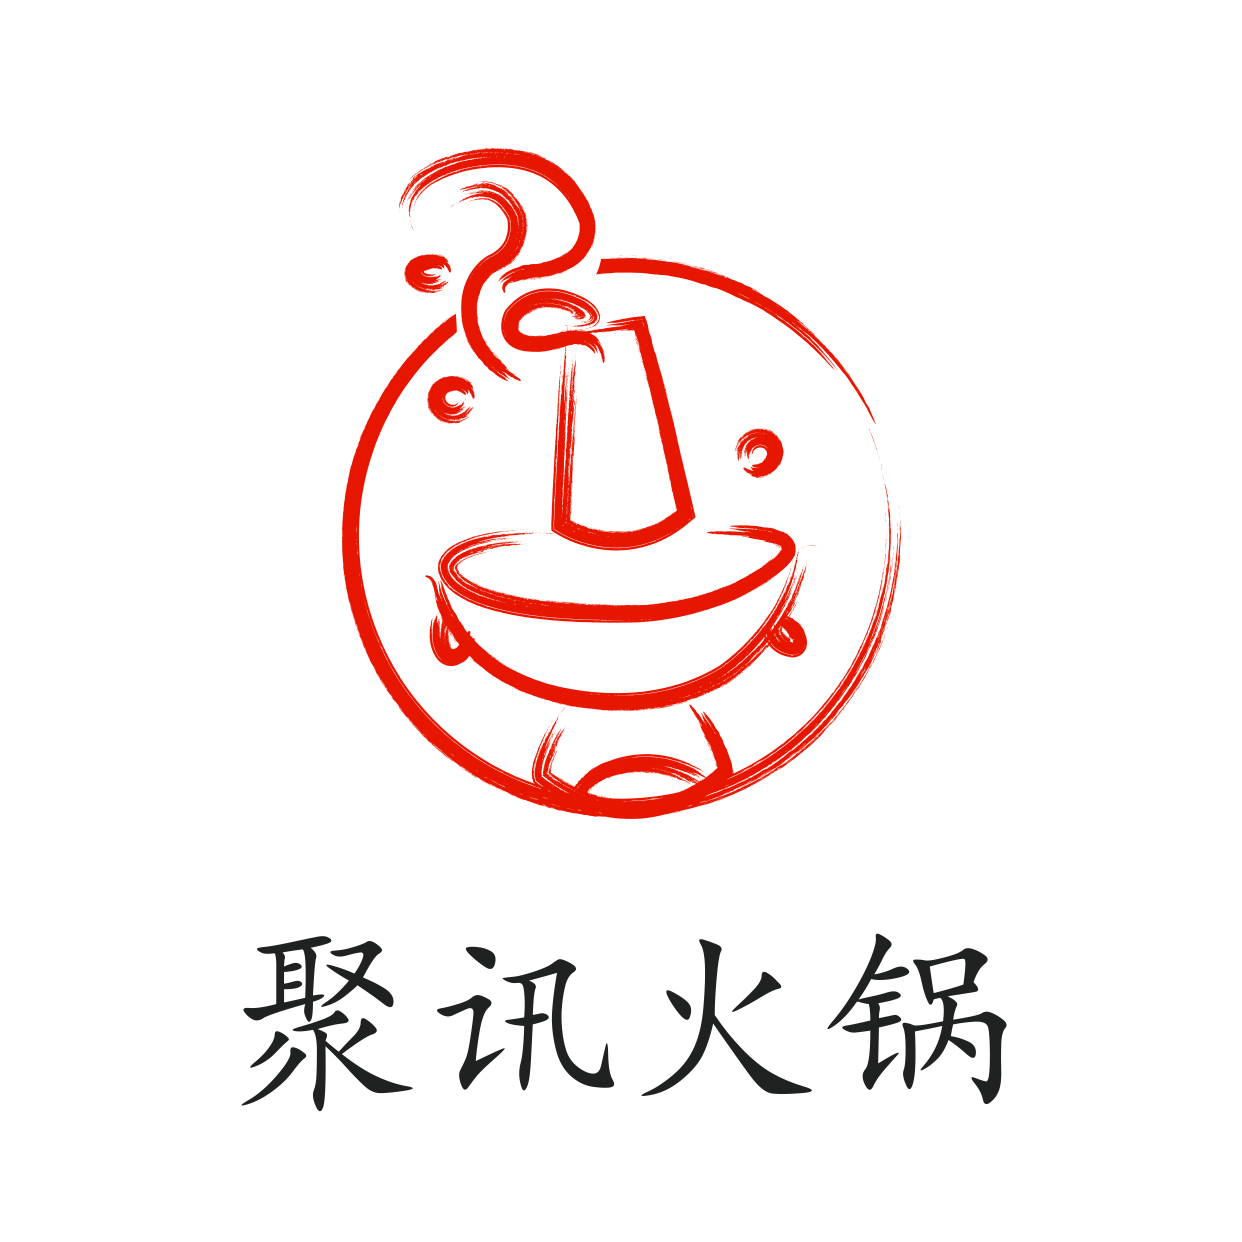 火锅美食/简约线条创意/头像/logo